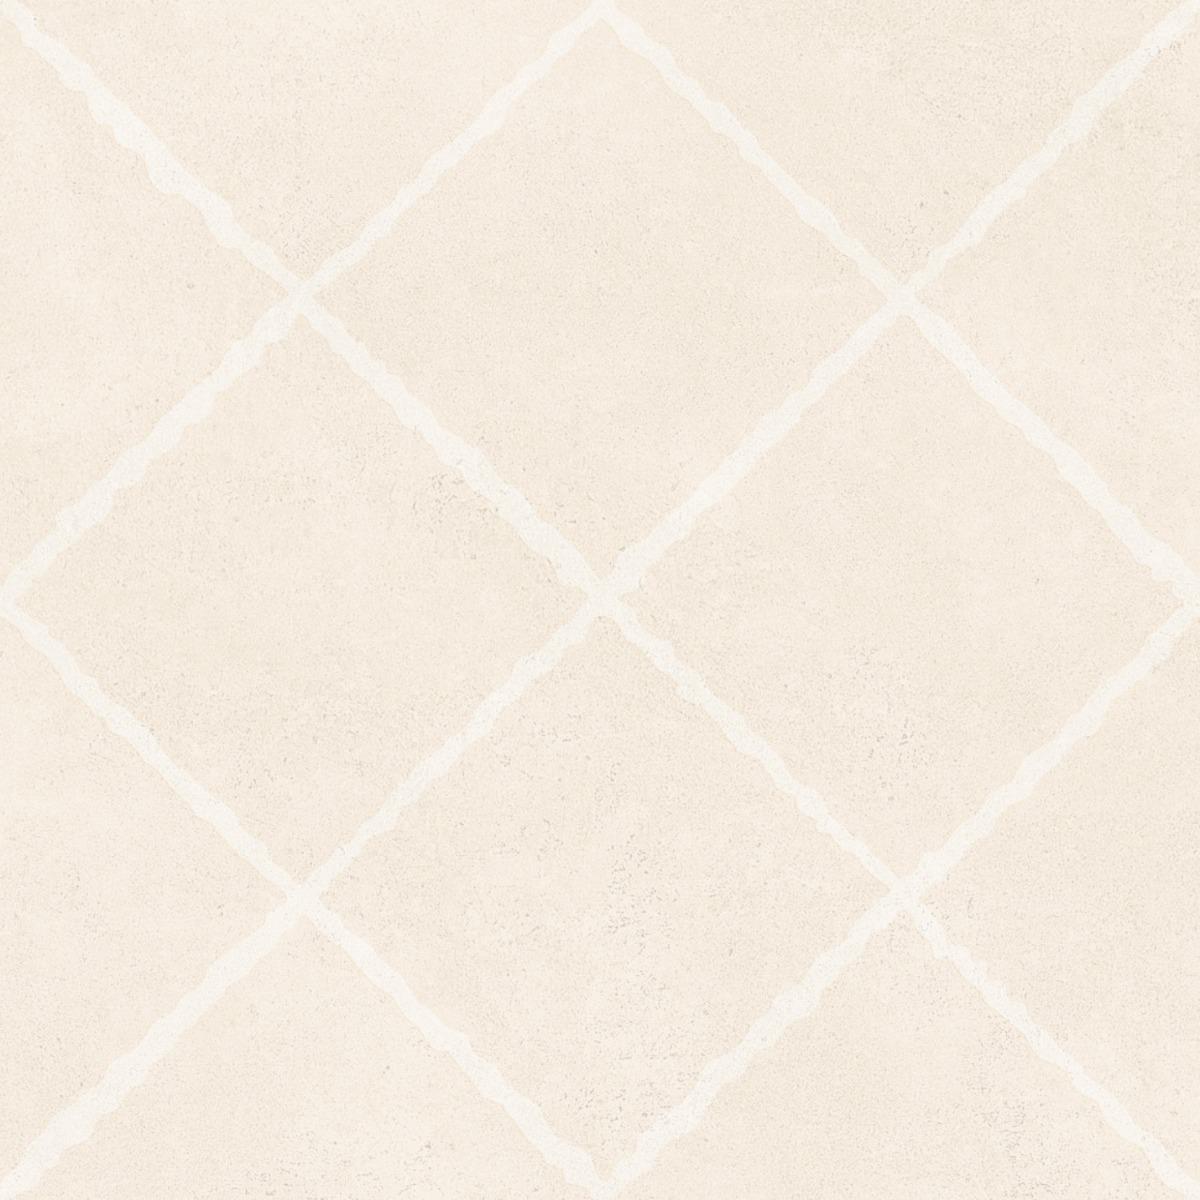 All Tiles for Bathroom Tiles, Kitchen Tiles, Balcony Tiles, Terrace Tiles